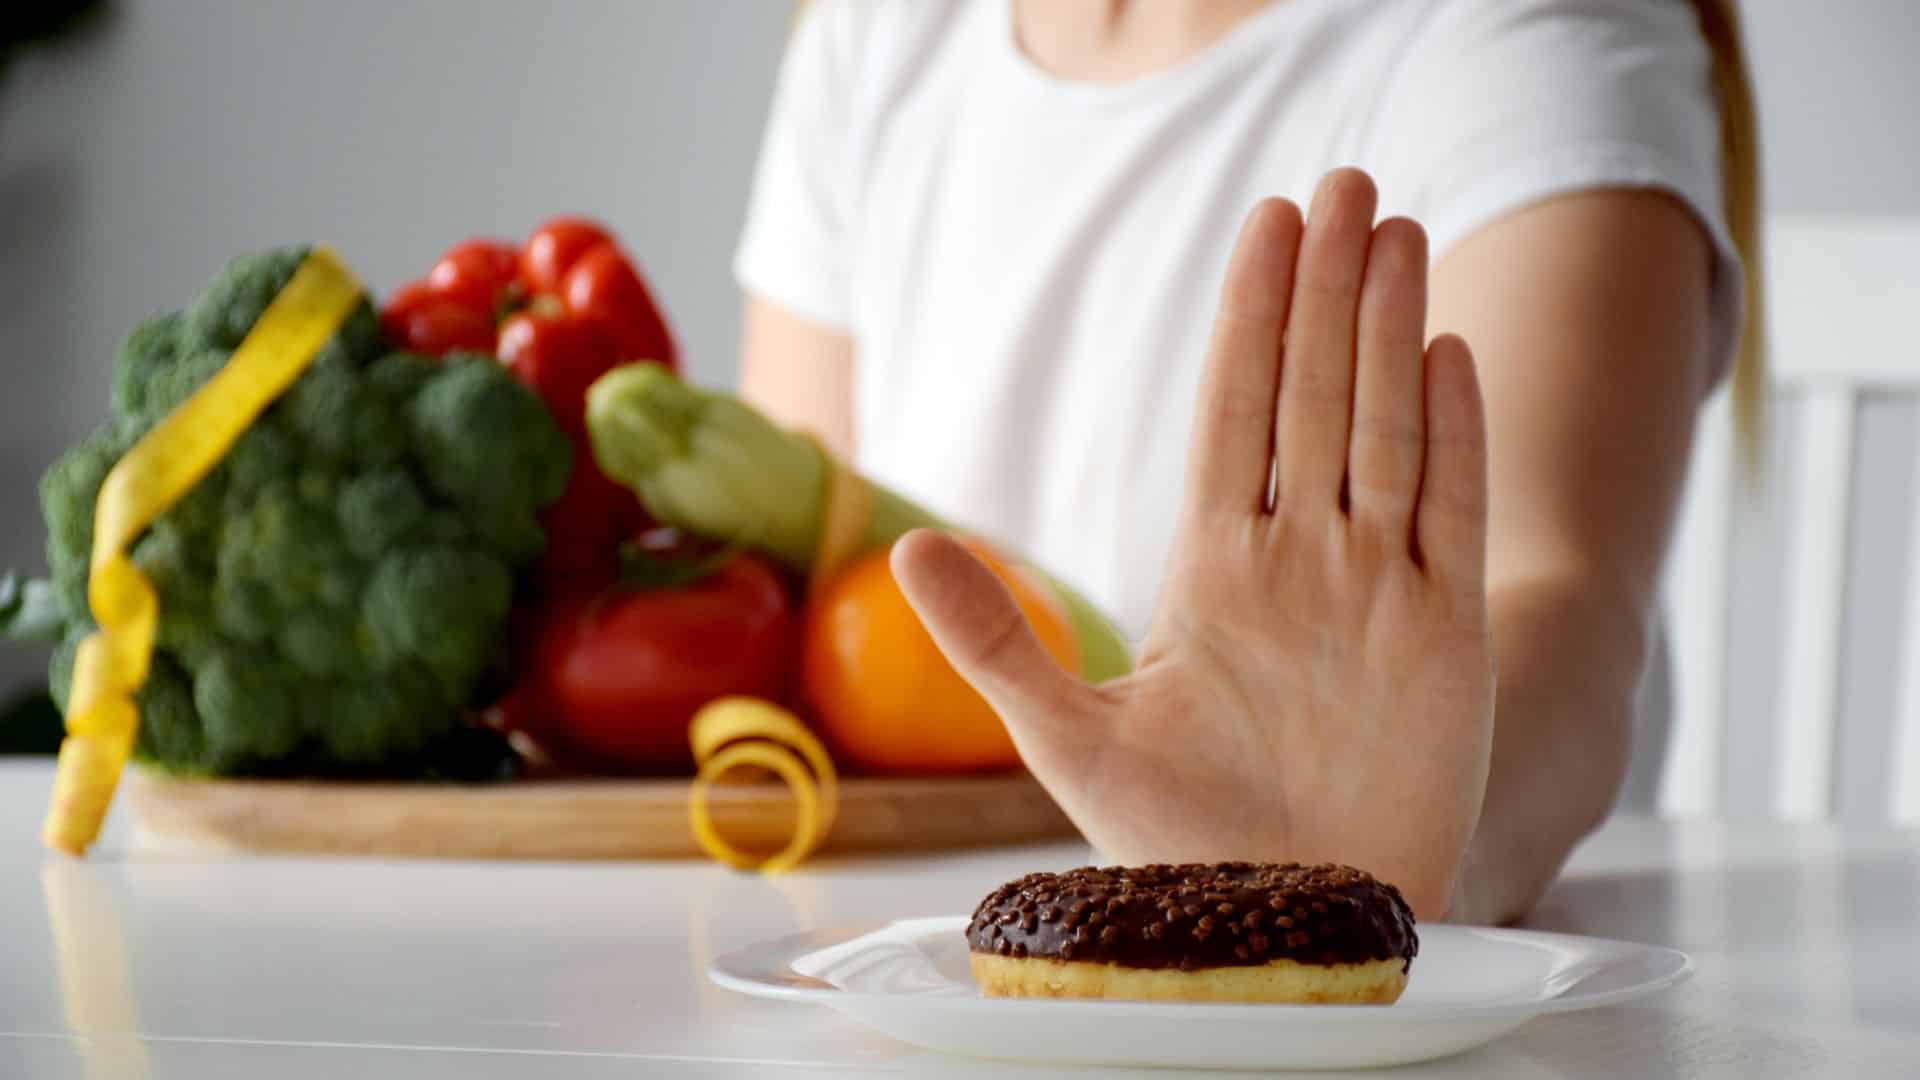 Frau, die Donut wegschiebt und Gemüse in der anderen Hand hält